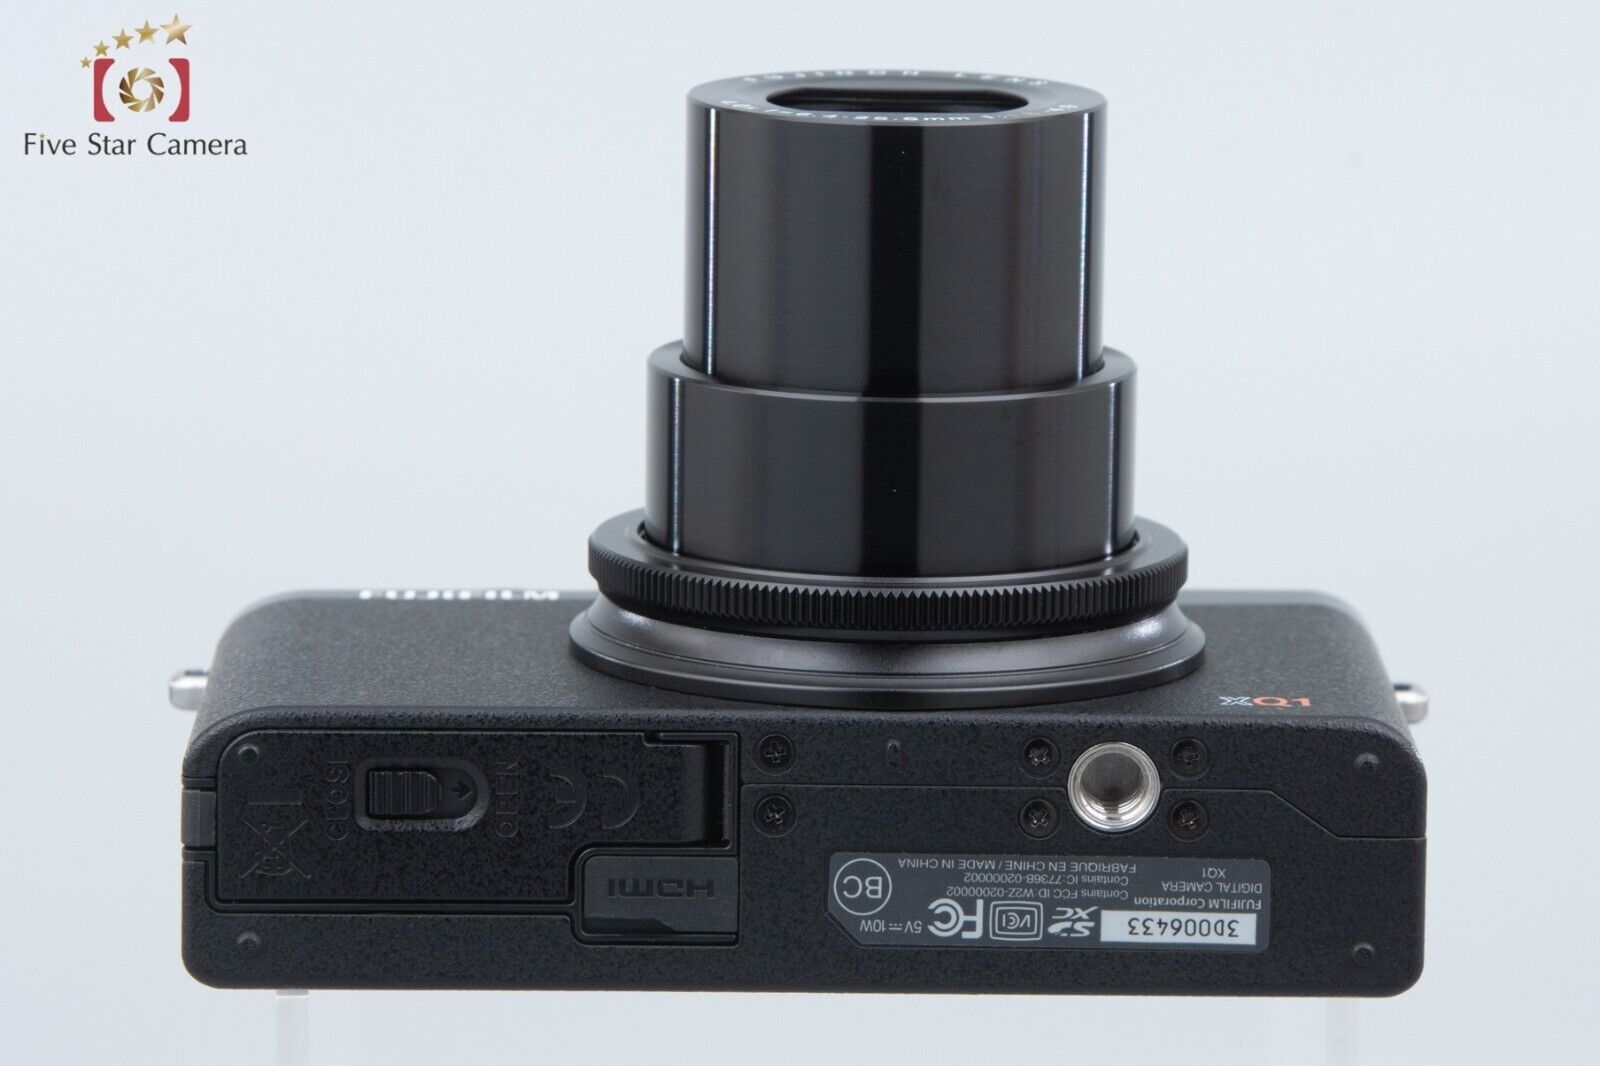 Near Mint!! Fujifilm XQ1 Black 12.0 MP Digital Camera